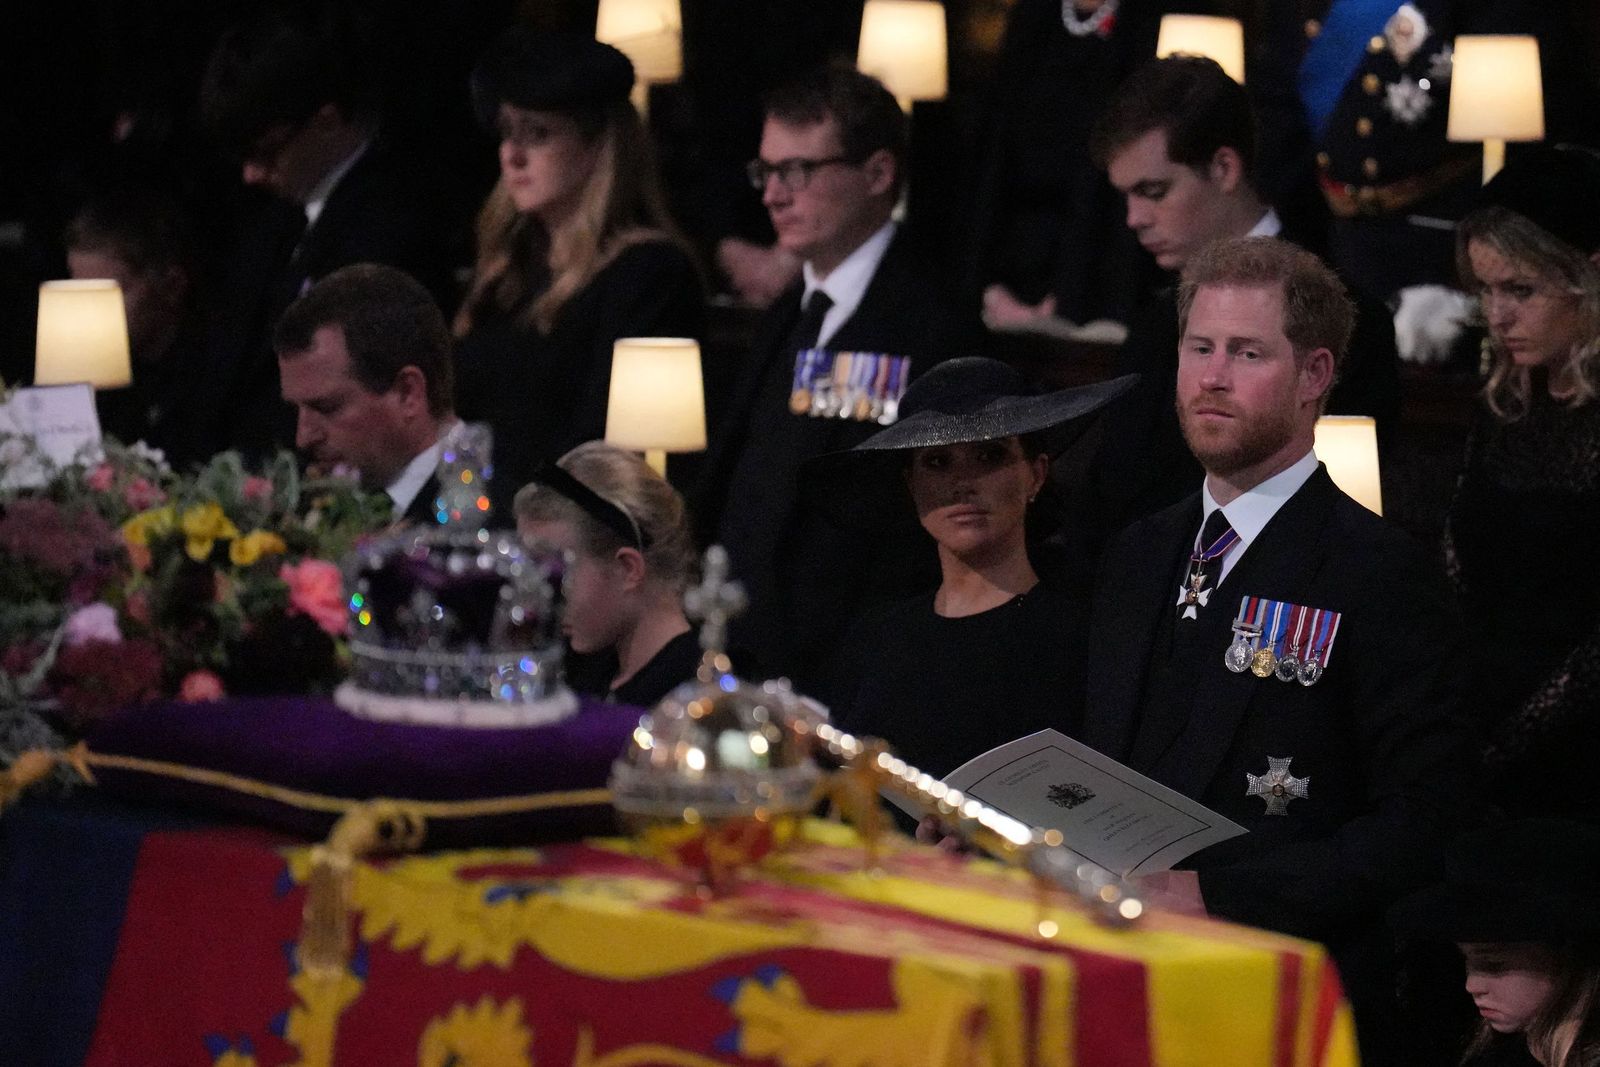 الأمير البريطاني هاريوزوجته ميجان دوقة ساسكس يحضران قداس الملكة إليزابيث الثانية في كنيسة سانت جورج داخل قلعة وندسور غربي لندن- 19 سبتمبر 2022 - AFP